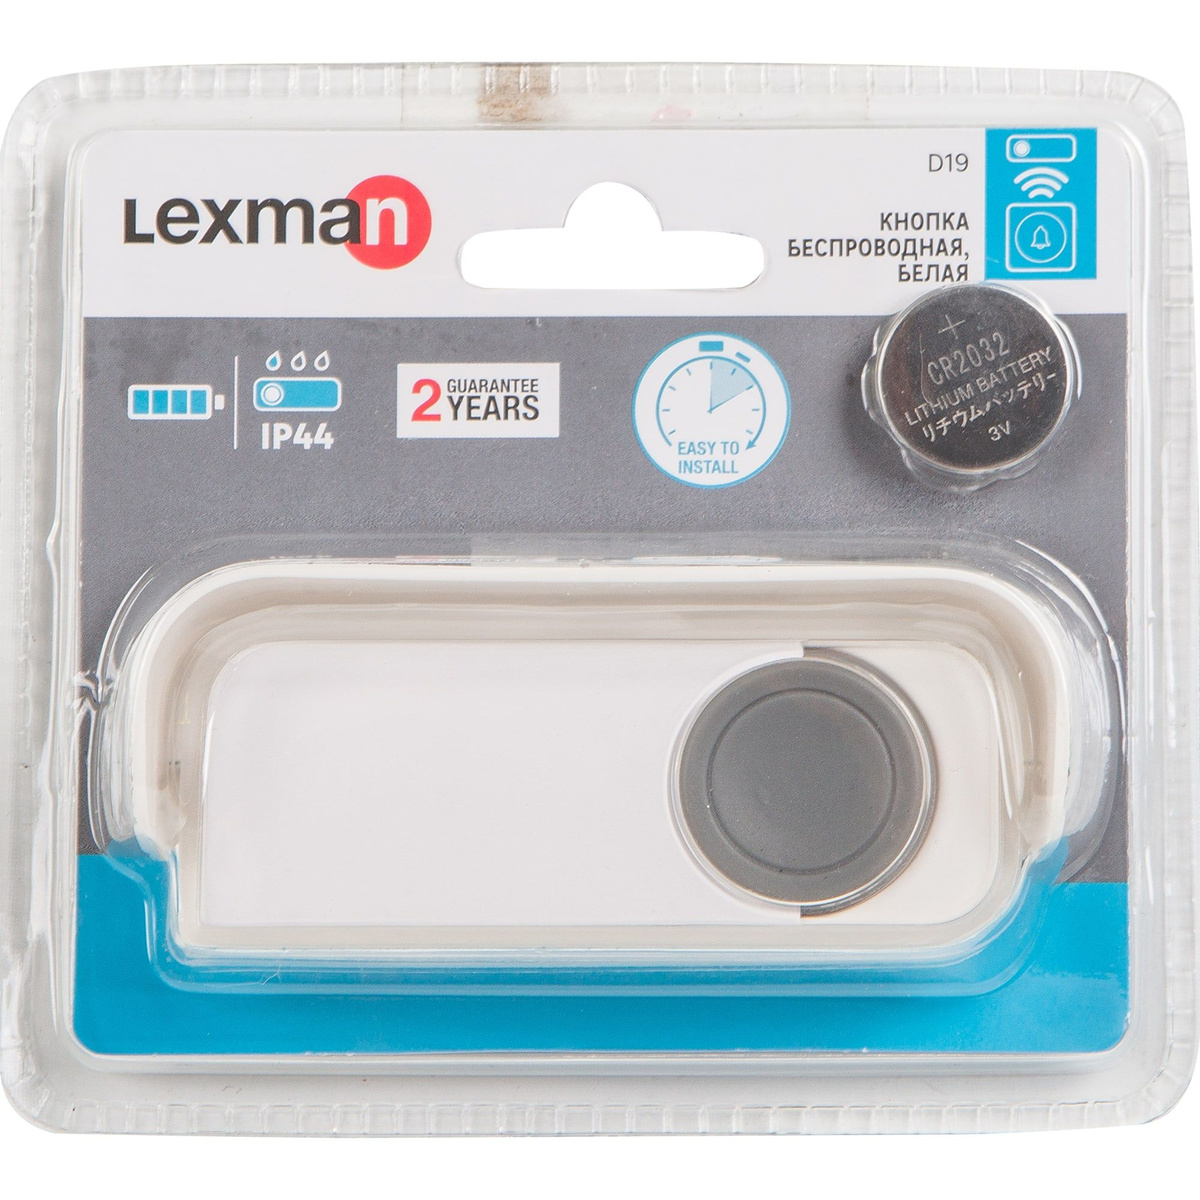 Кнопка для дверного звонка беспроводная Lexman цвет белый - Рис. 4